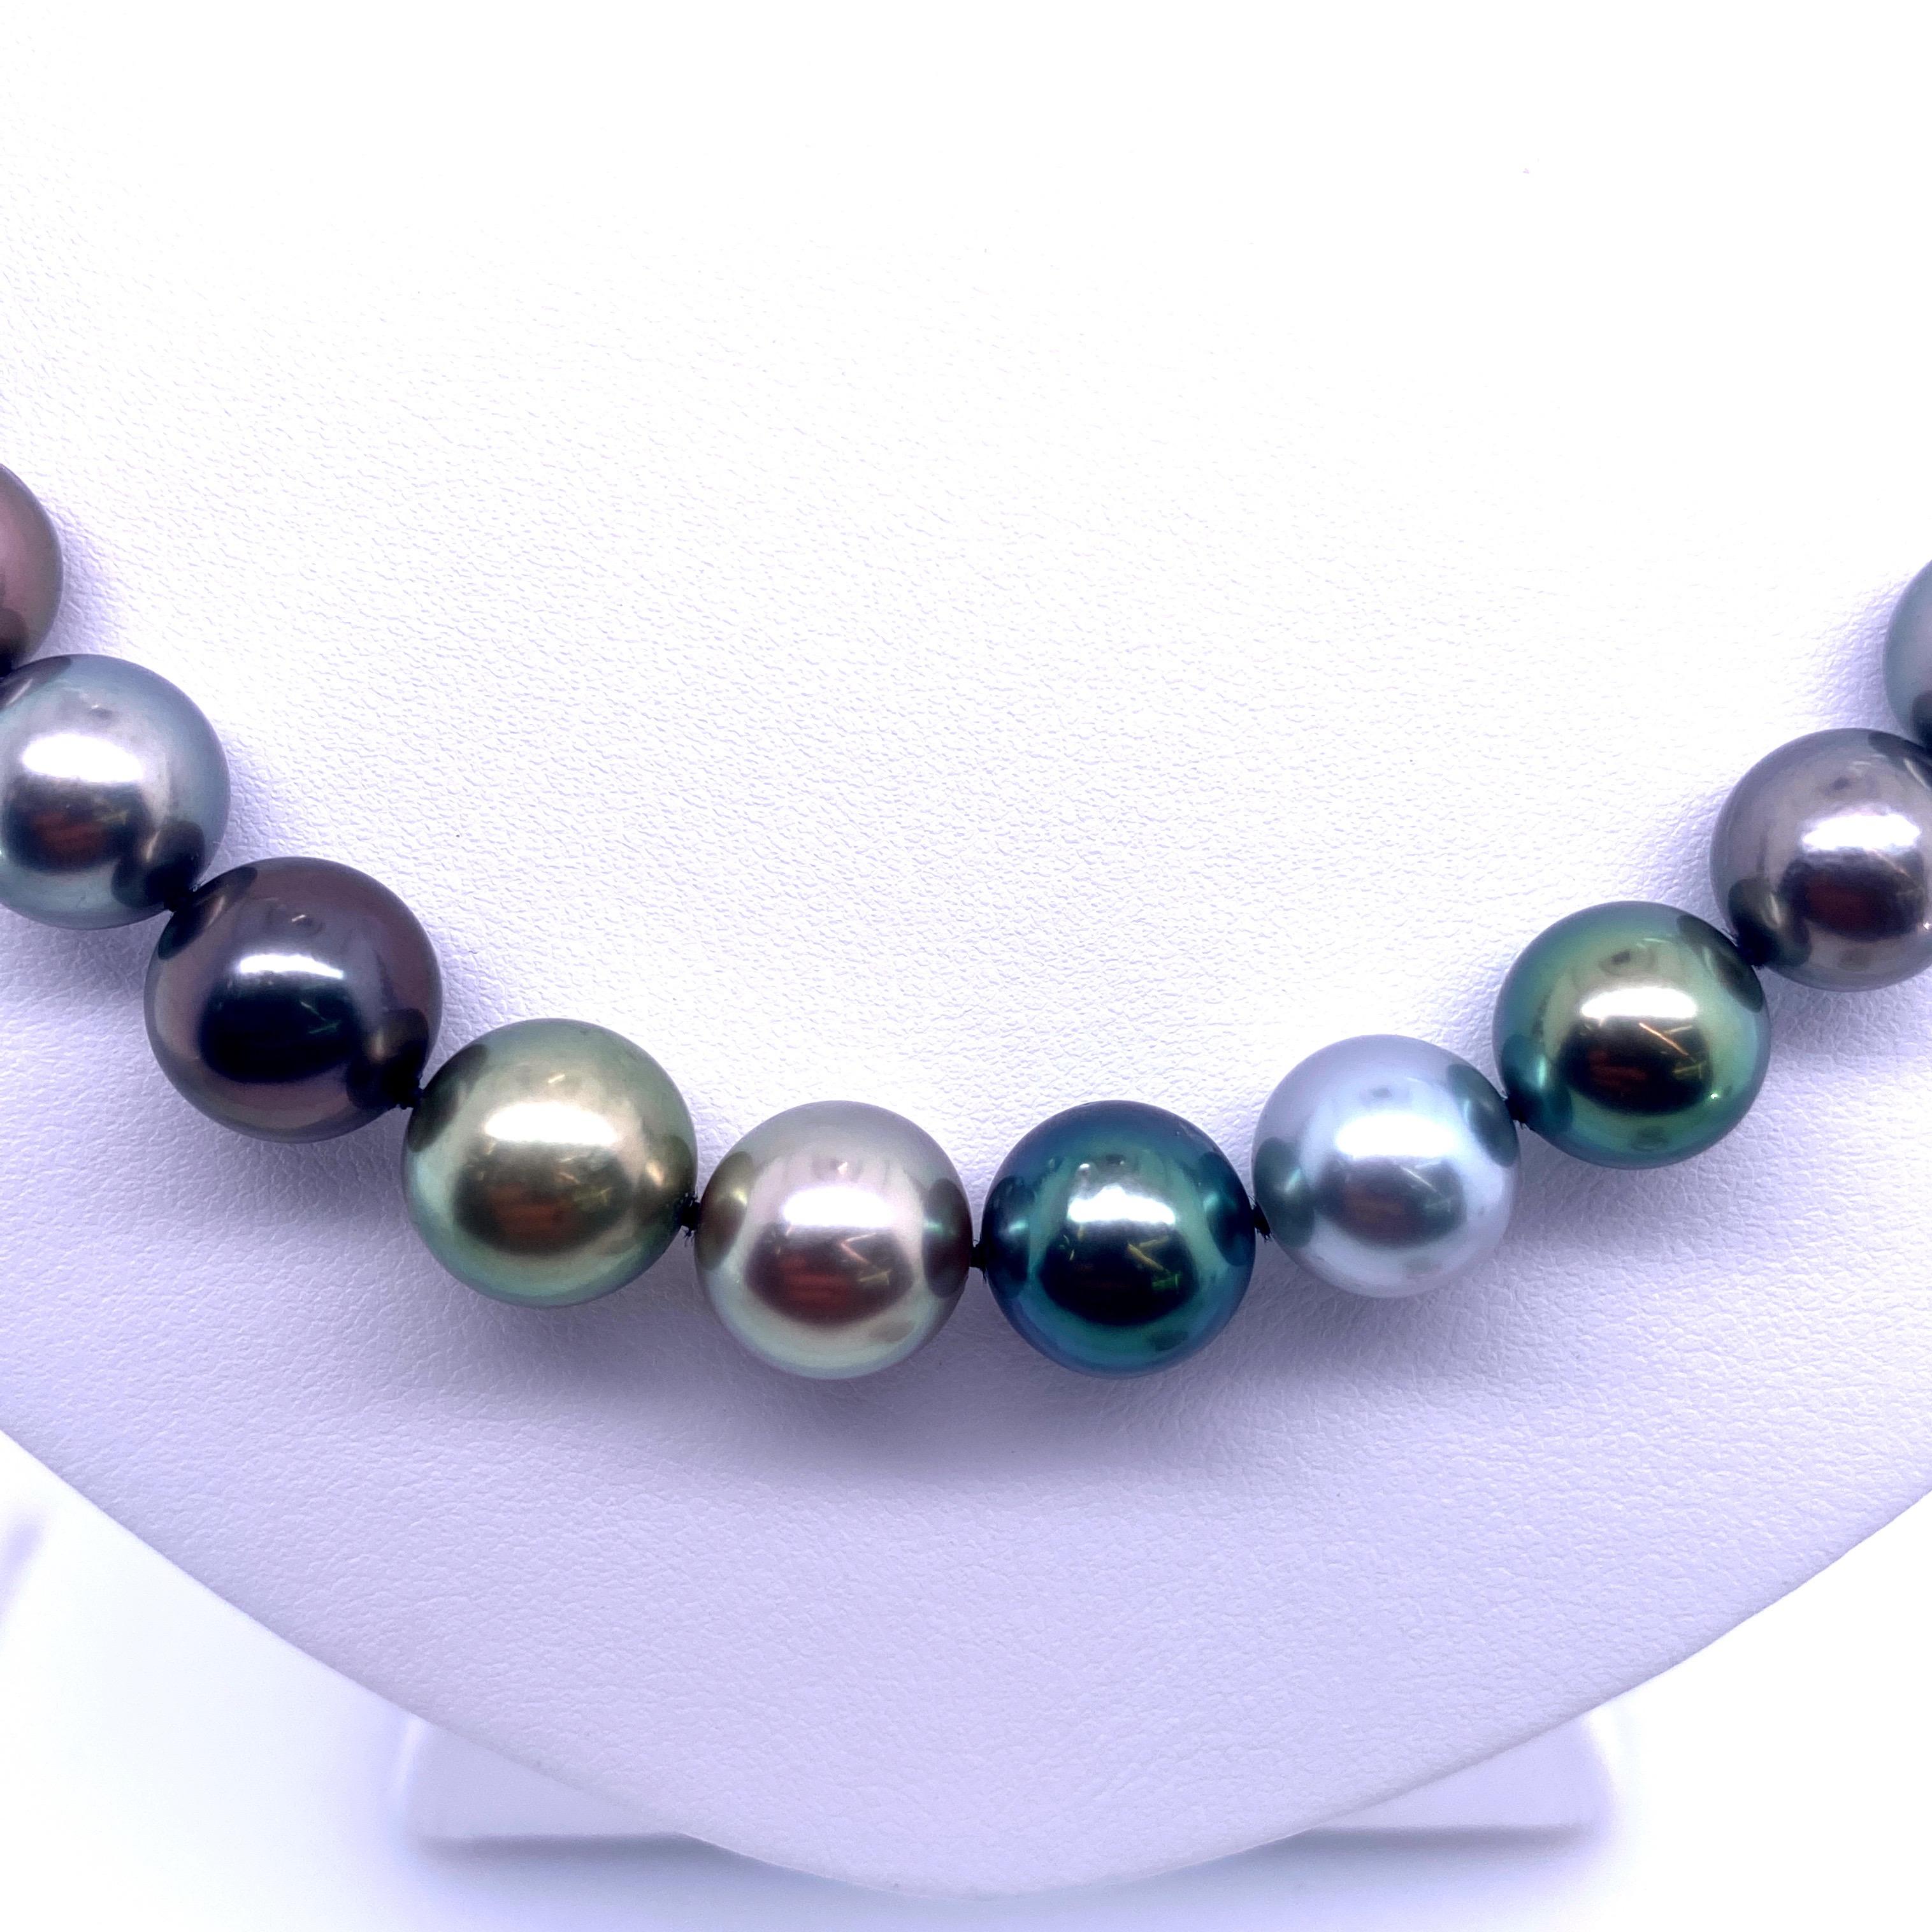 Mehrfarbige Tahiti-Perlenkette mit 41 runden Perlen von hellgrau bis dunkelgrau mit einer Größe von 9,8-11 MM und einem Kugelverschluss aus 14 Karat Weißgold. 

Qualität der Perlen: AAA
Perlglanz: AAA Ausgezeichnet
Perlmutt : Sehr dick

Der Strang